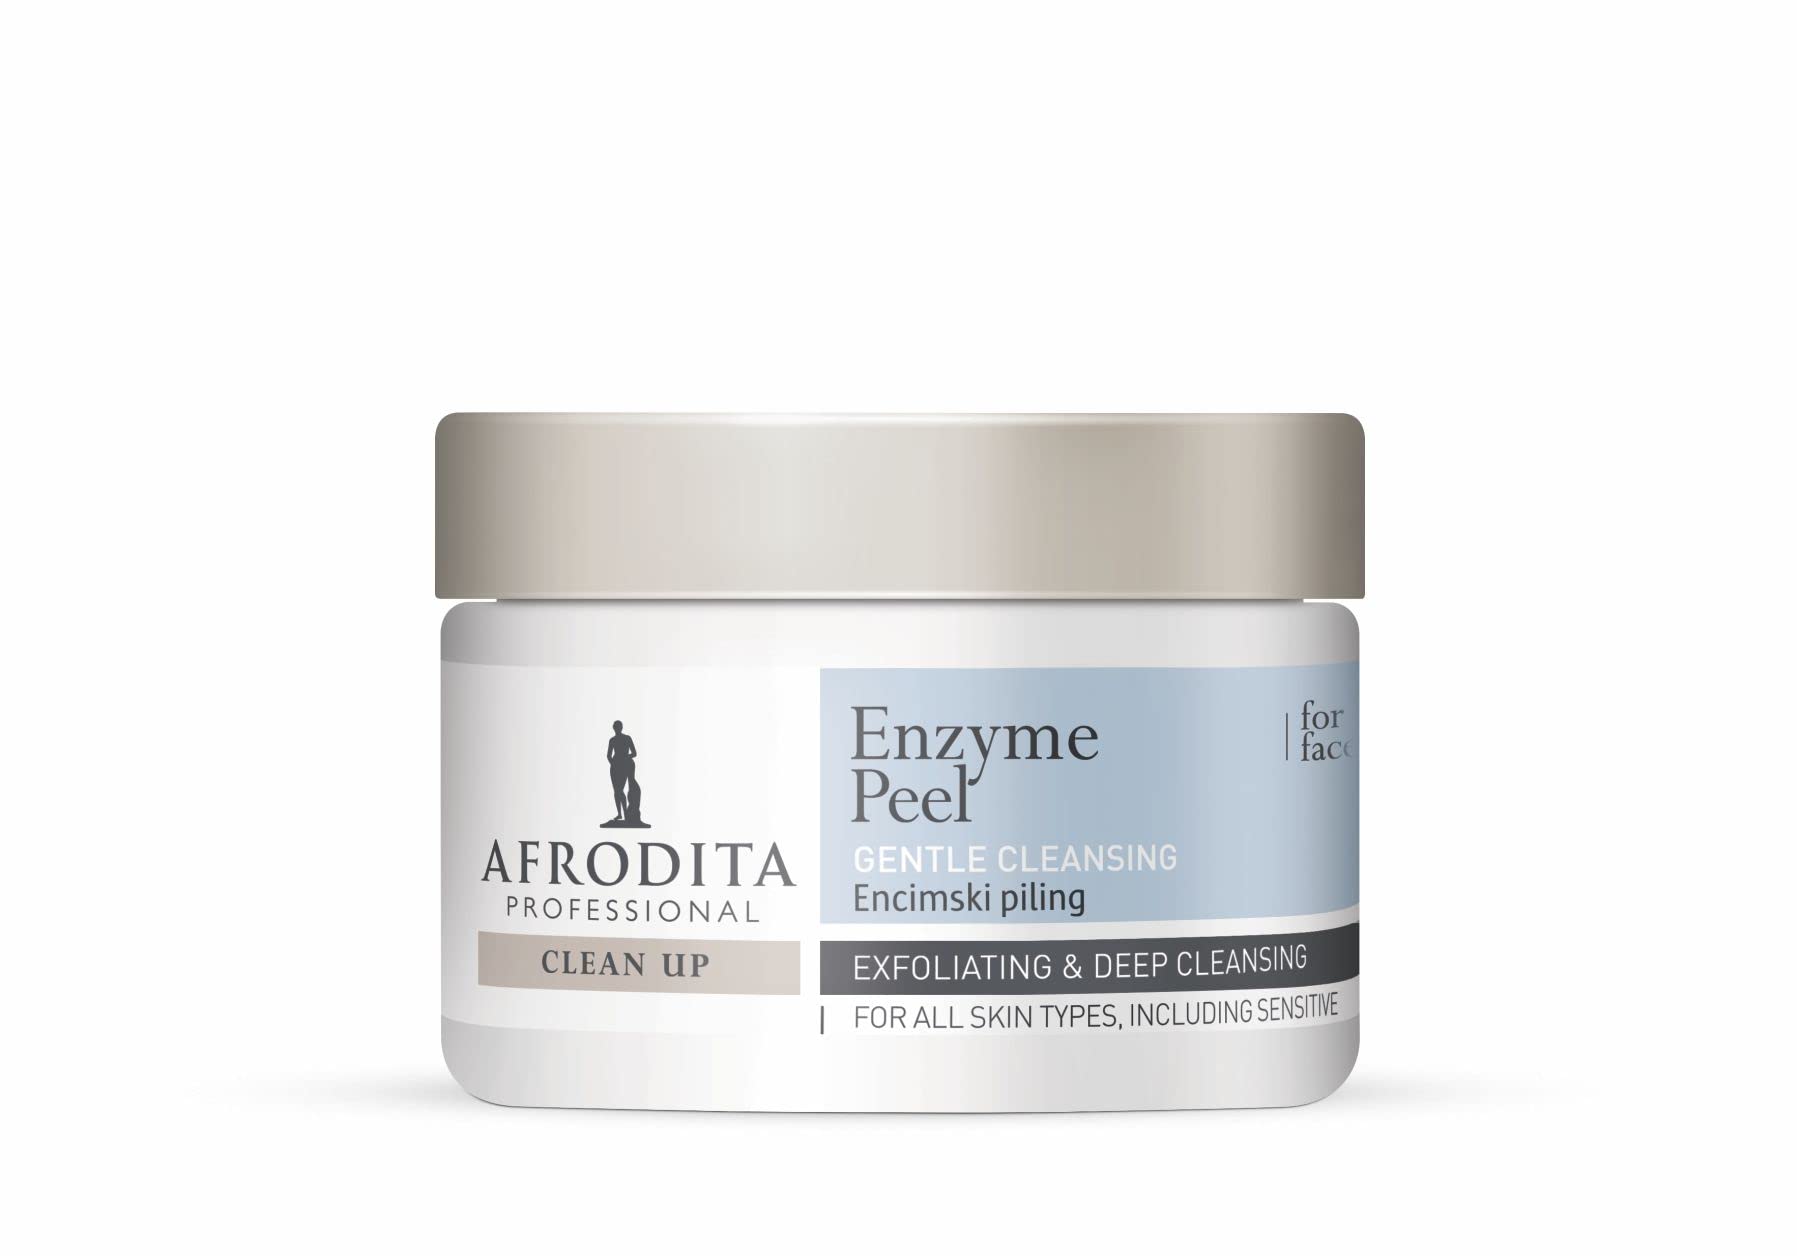 Afrodita Professional CLEAN UP Enzymatisches Peeling für Gesicht und Hände | 100g | Zur vollständigen Regeneration aller Hauttypen | Peeling & Tiefenreinigung